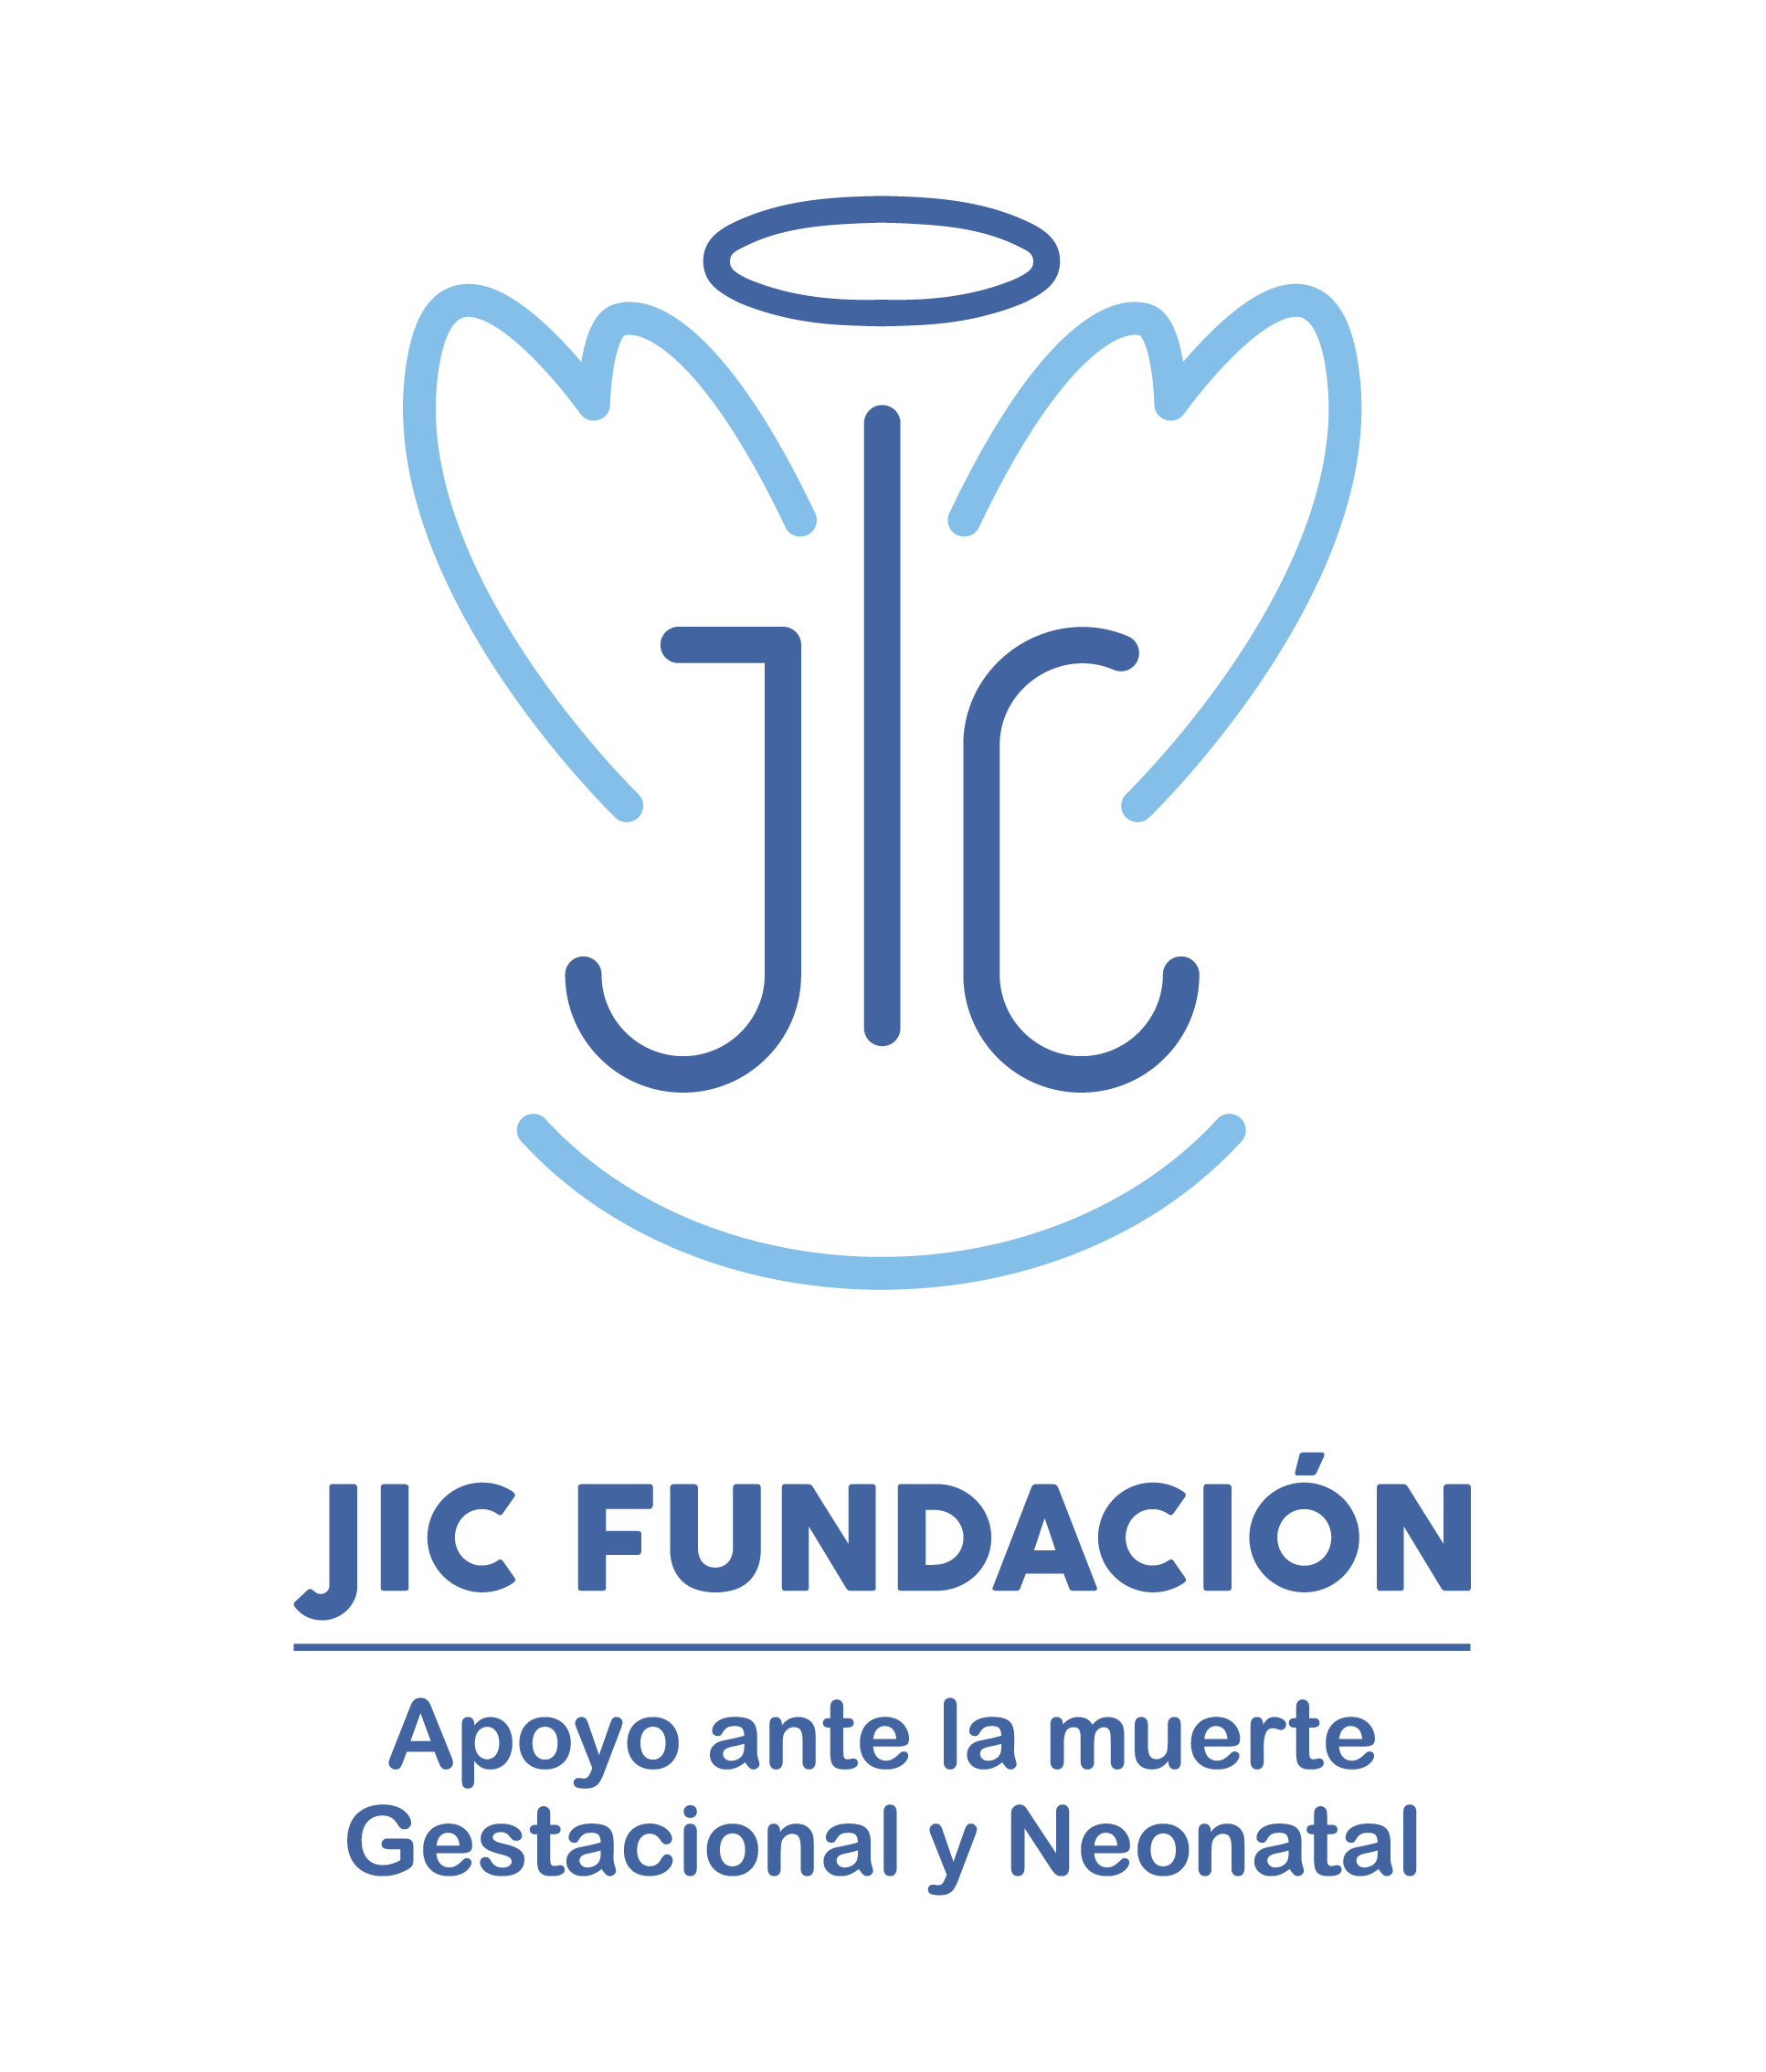 Logo of JIC Fundación de Apoyo Ante la Muerte Gestacional y Neonatal (JIC Foundation) 